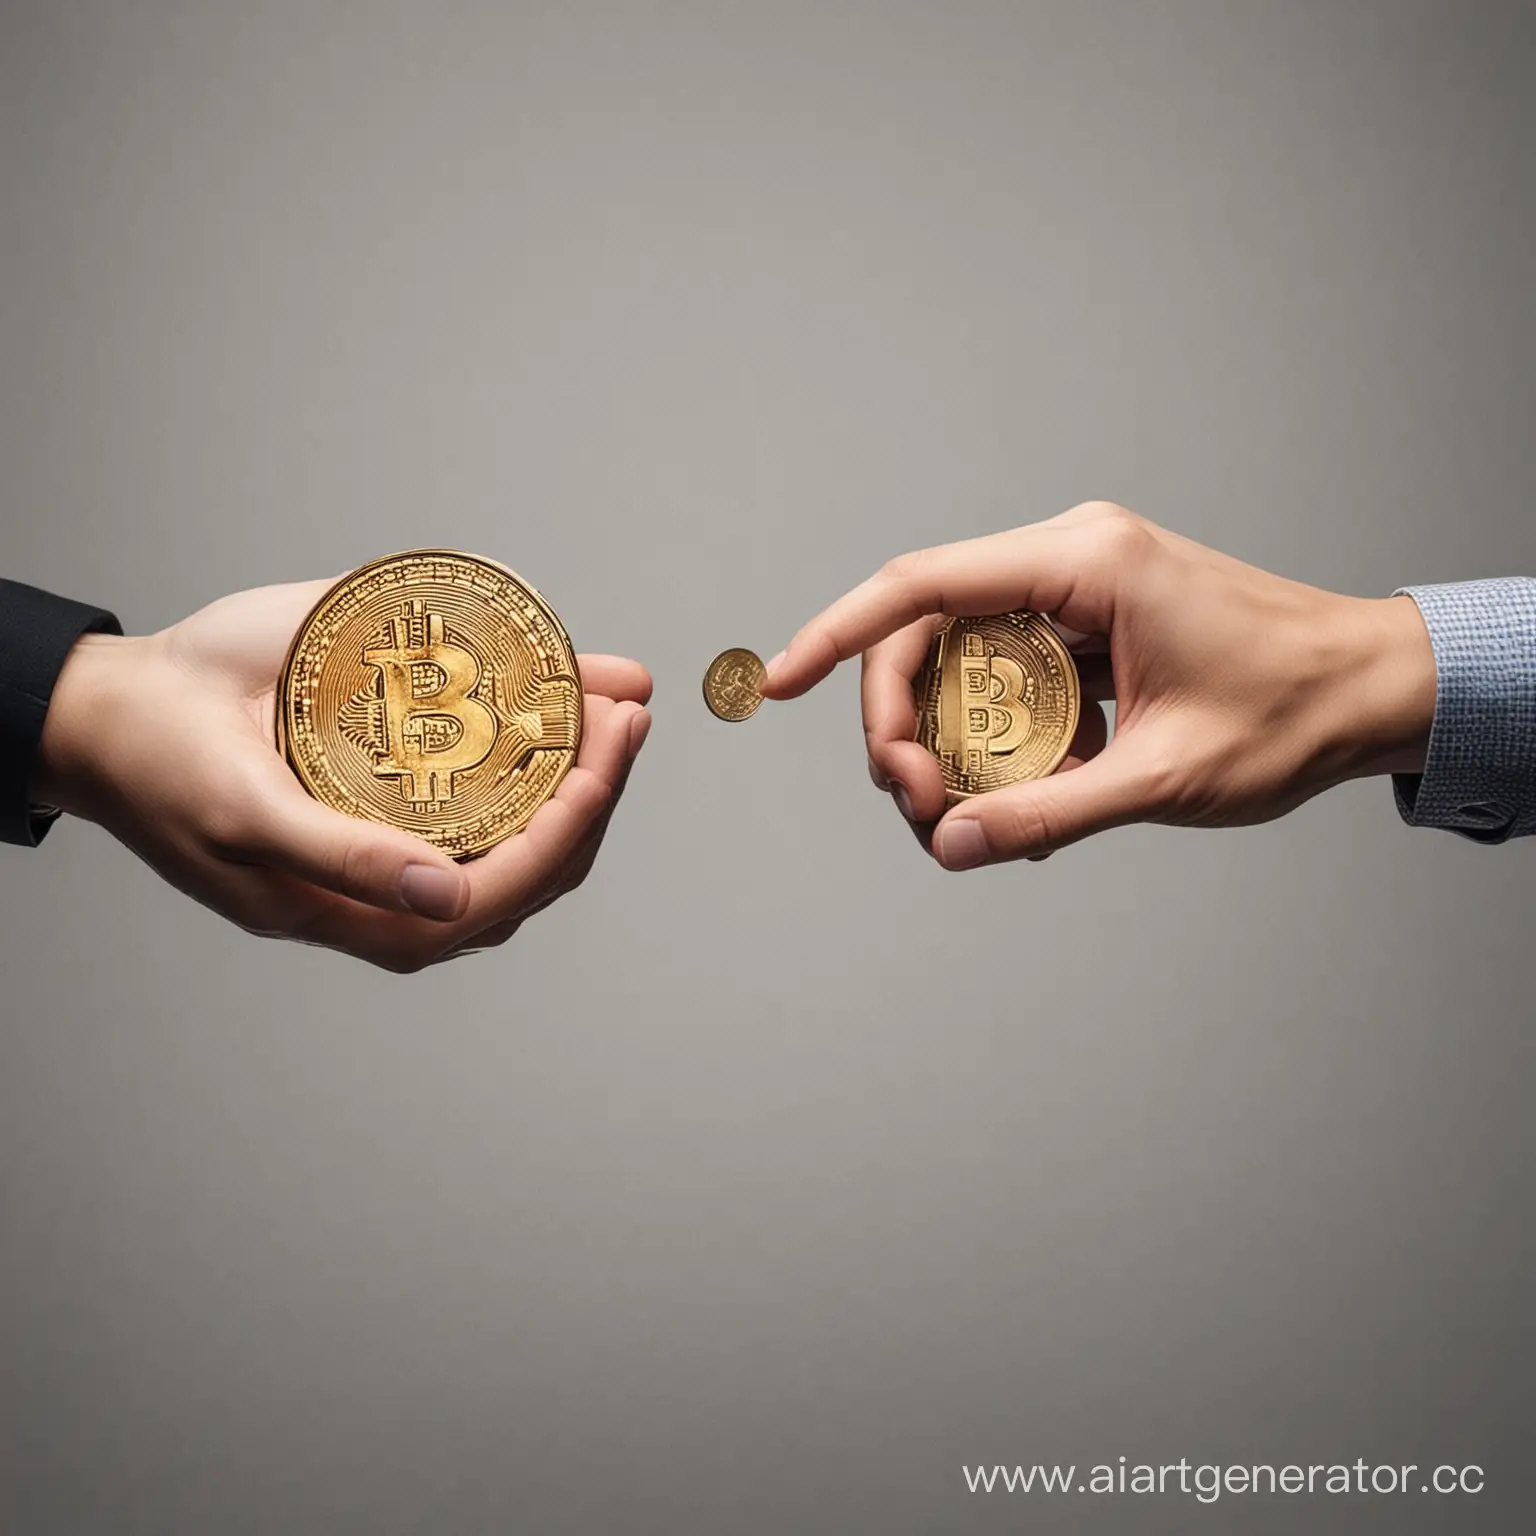 2 руки которые меняют криптовалюты(разные монеты)